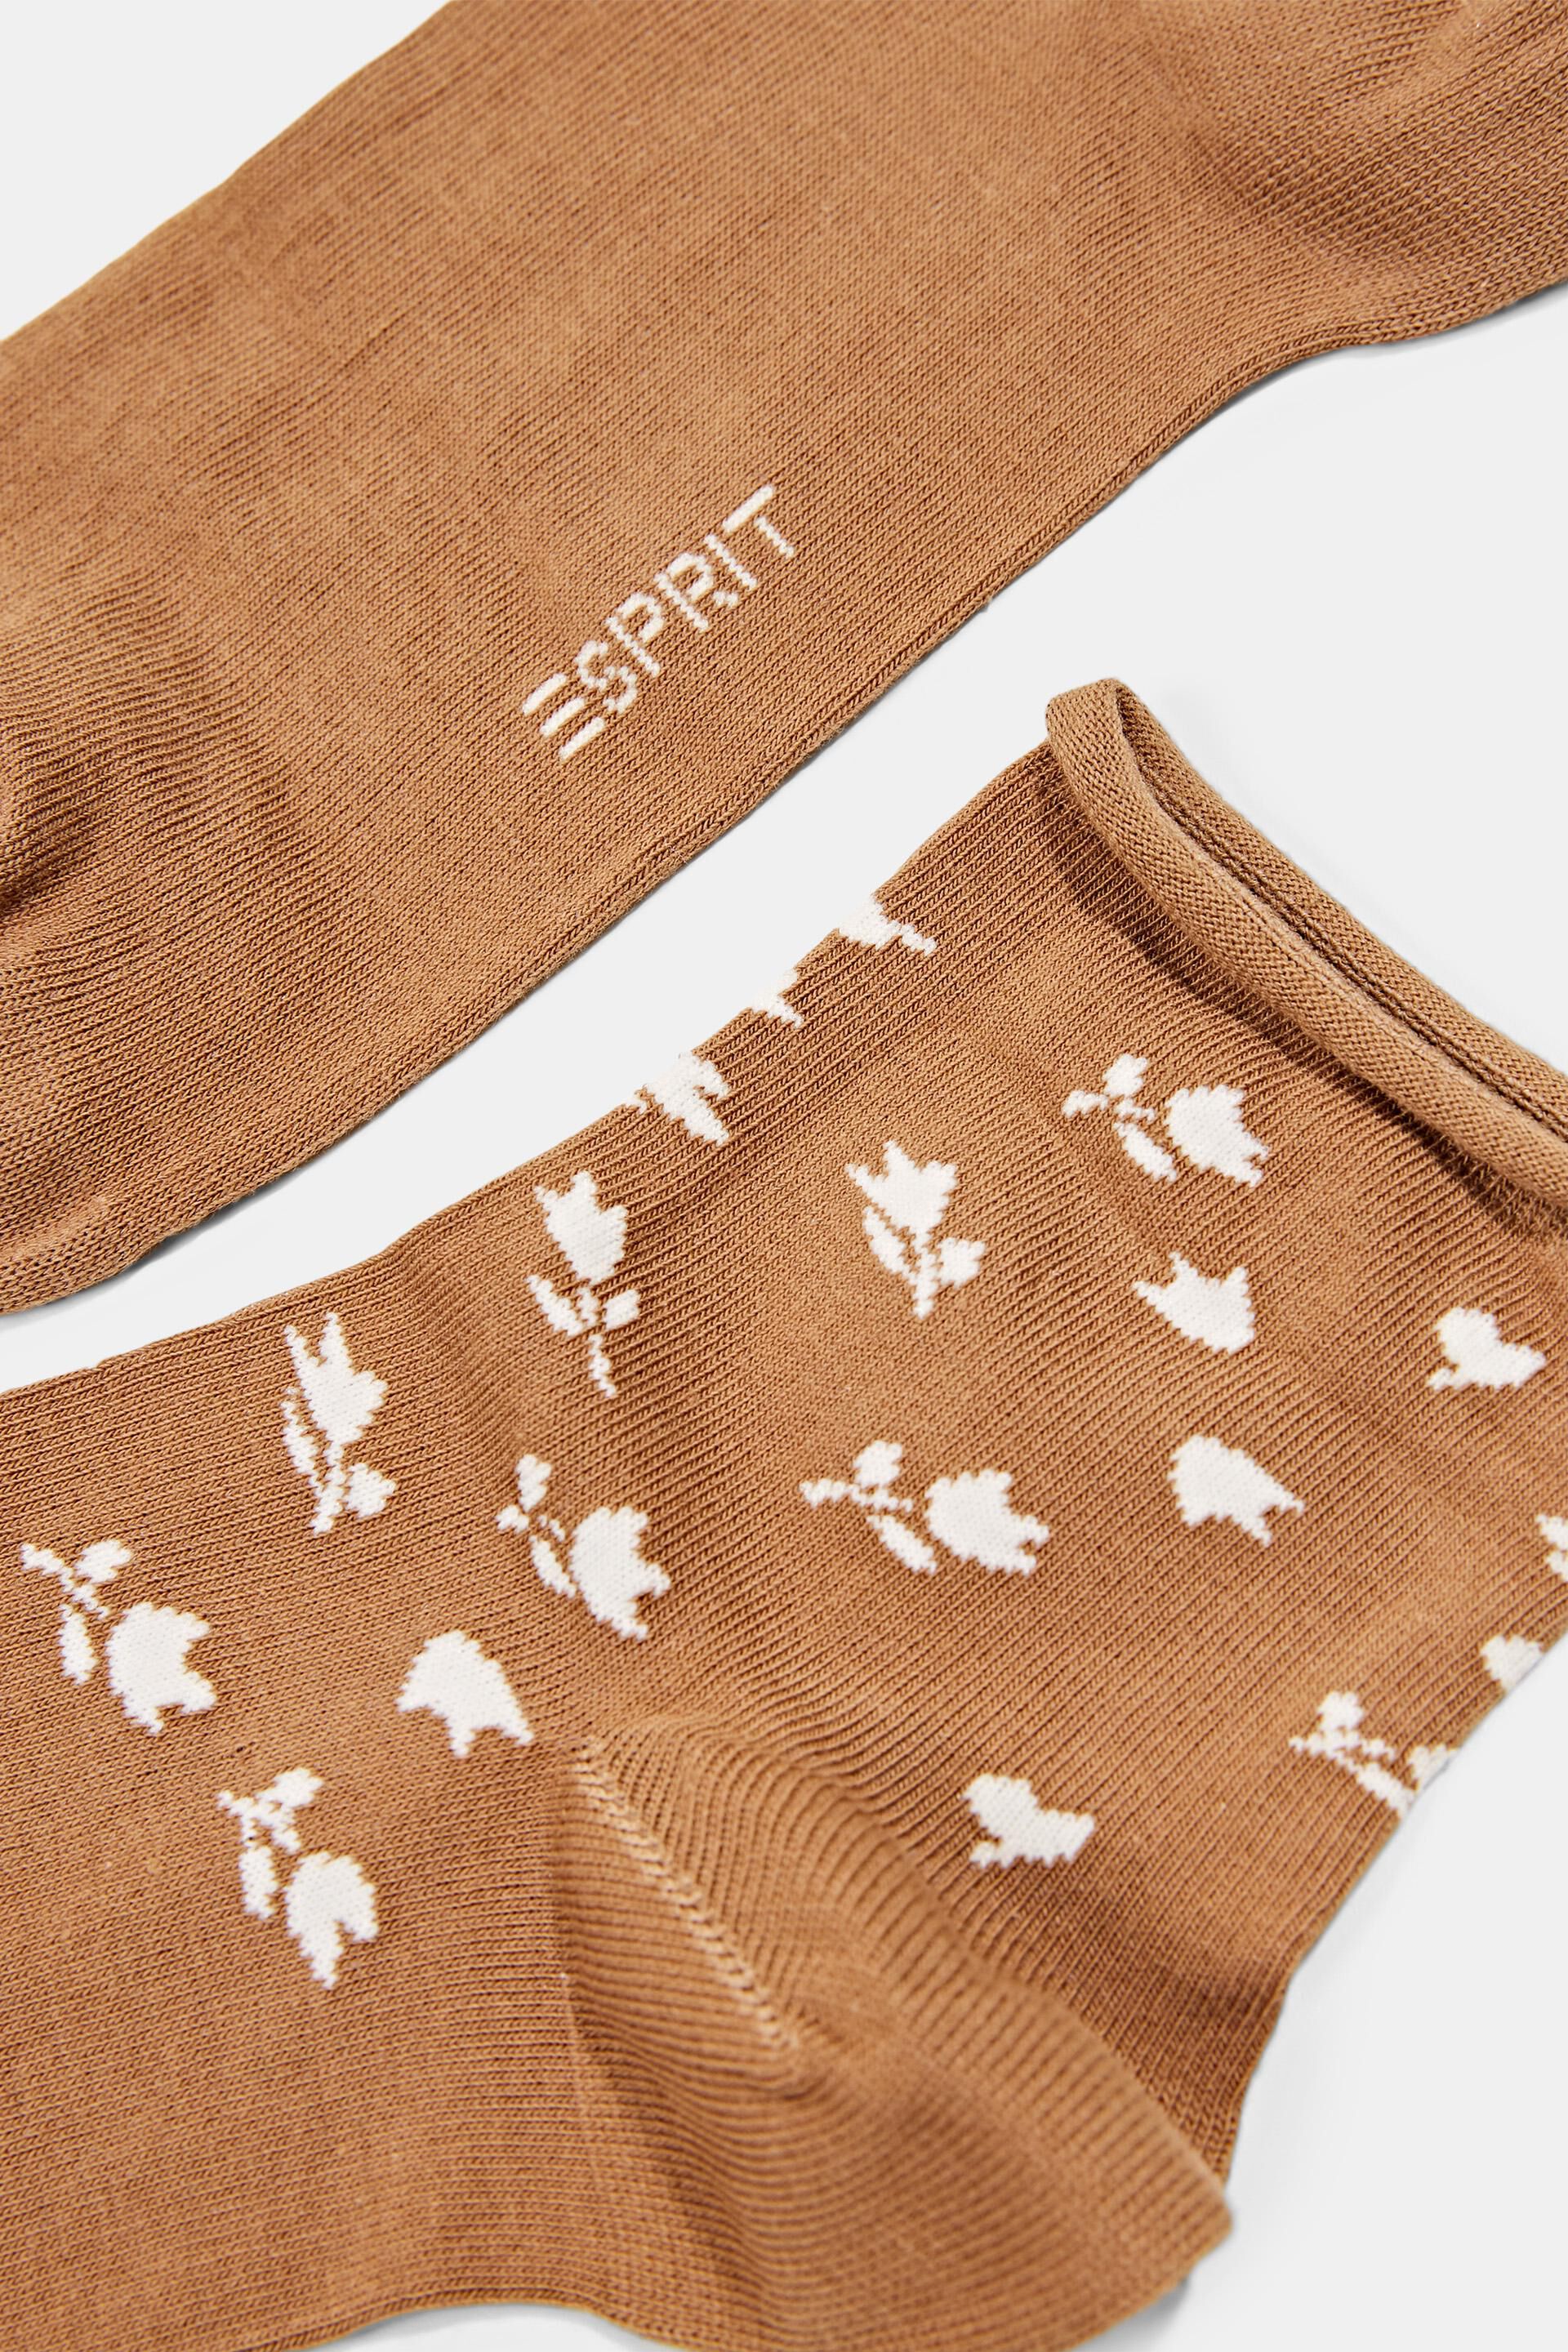 Esprit Blumenmuster 2er-Pack mit Socken kurze